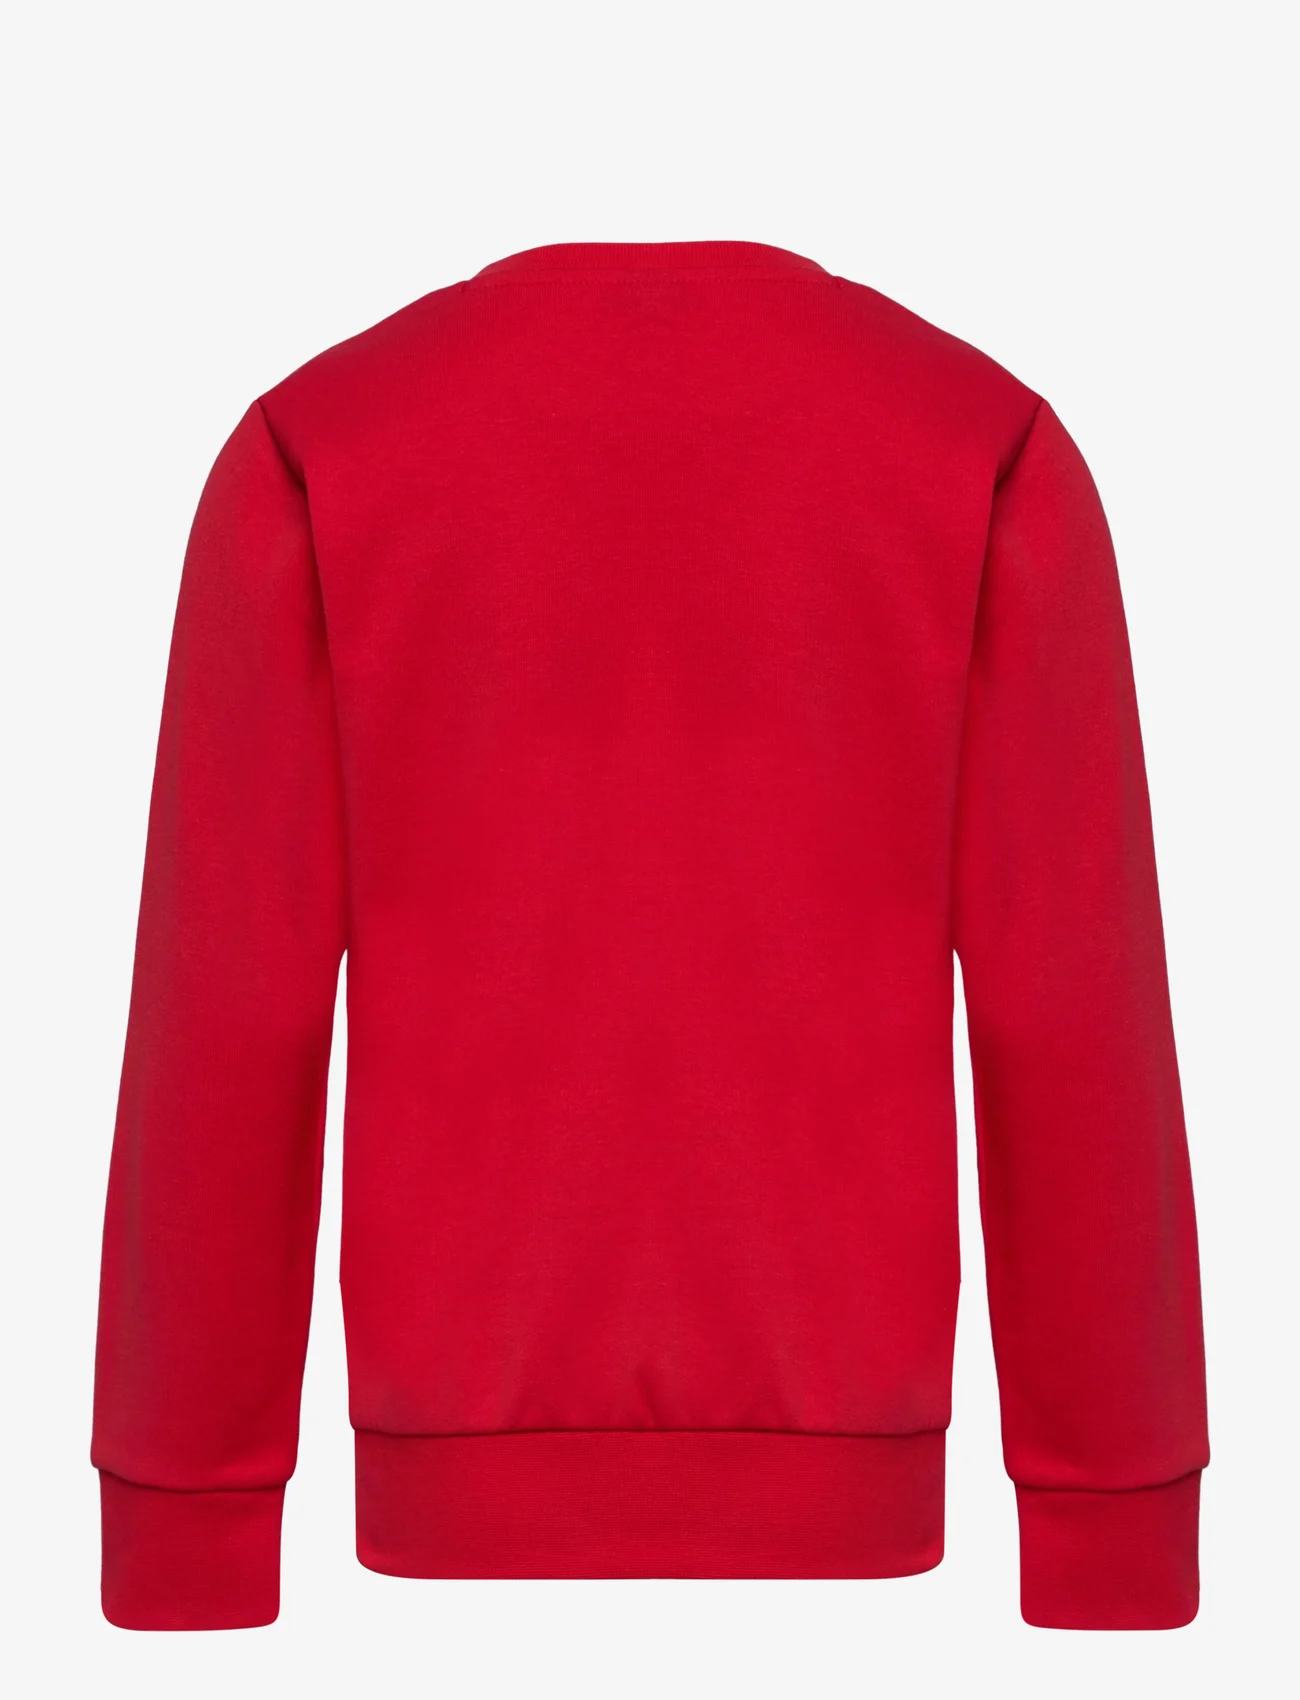 Champion - Crewneck Sweatshirt - die niedrigsten preise - true red - 1